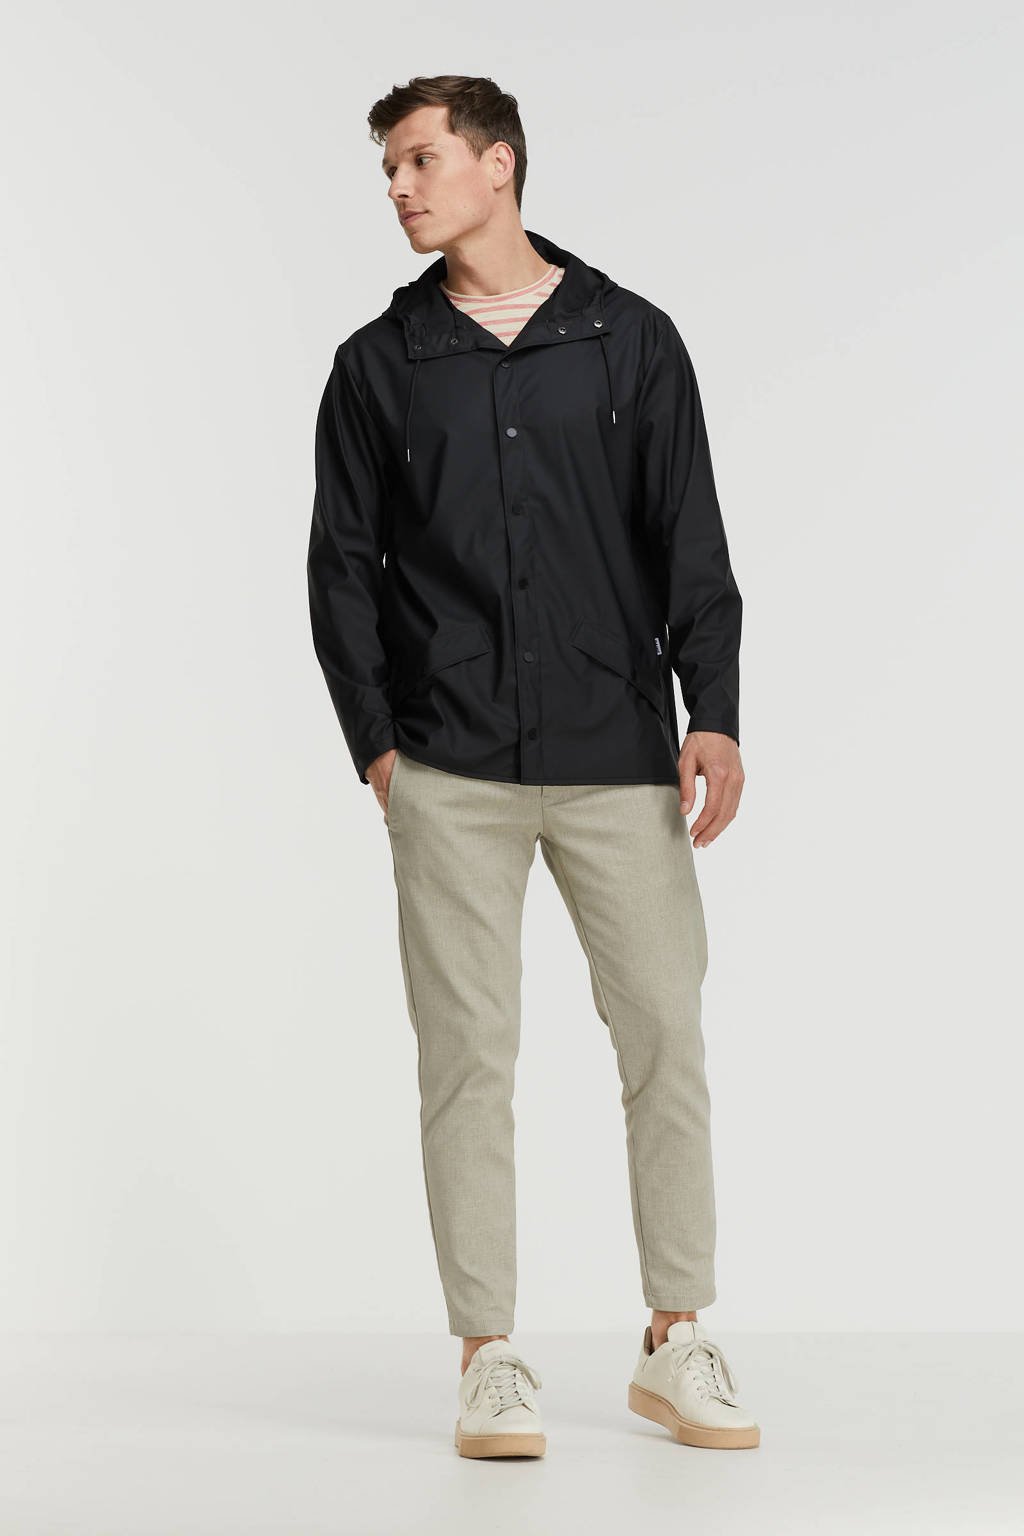 Zwarte heren Rains jas van polyester met capuchon en drukknoopsluiting